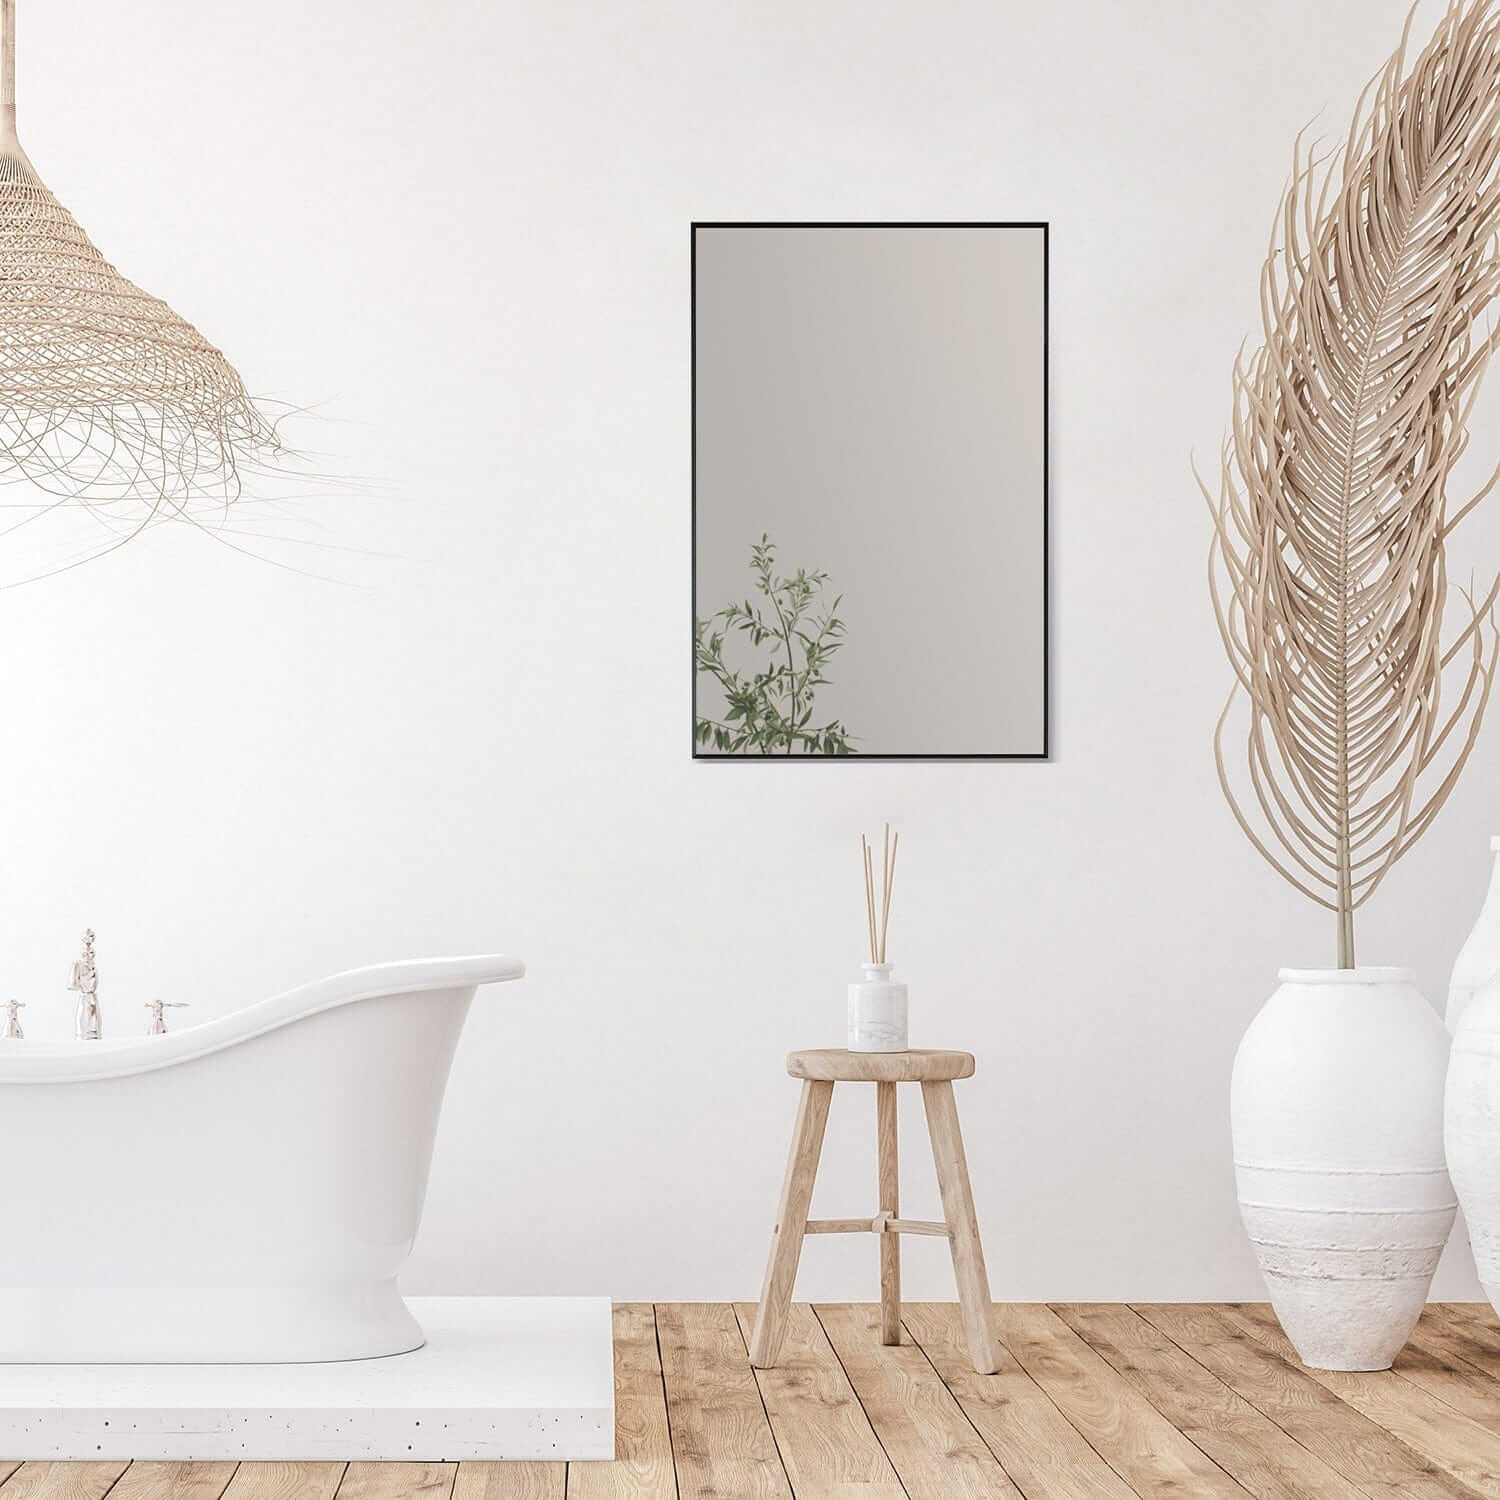 Bathroom Mirror - Altair Sassi 24W x 36H - 755024-MIR-BF